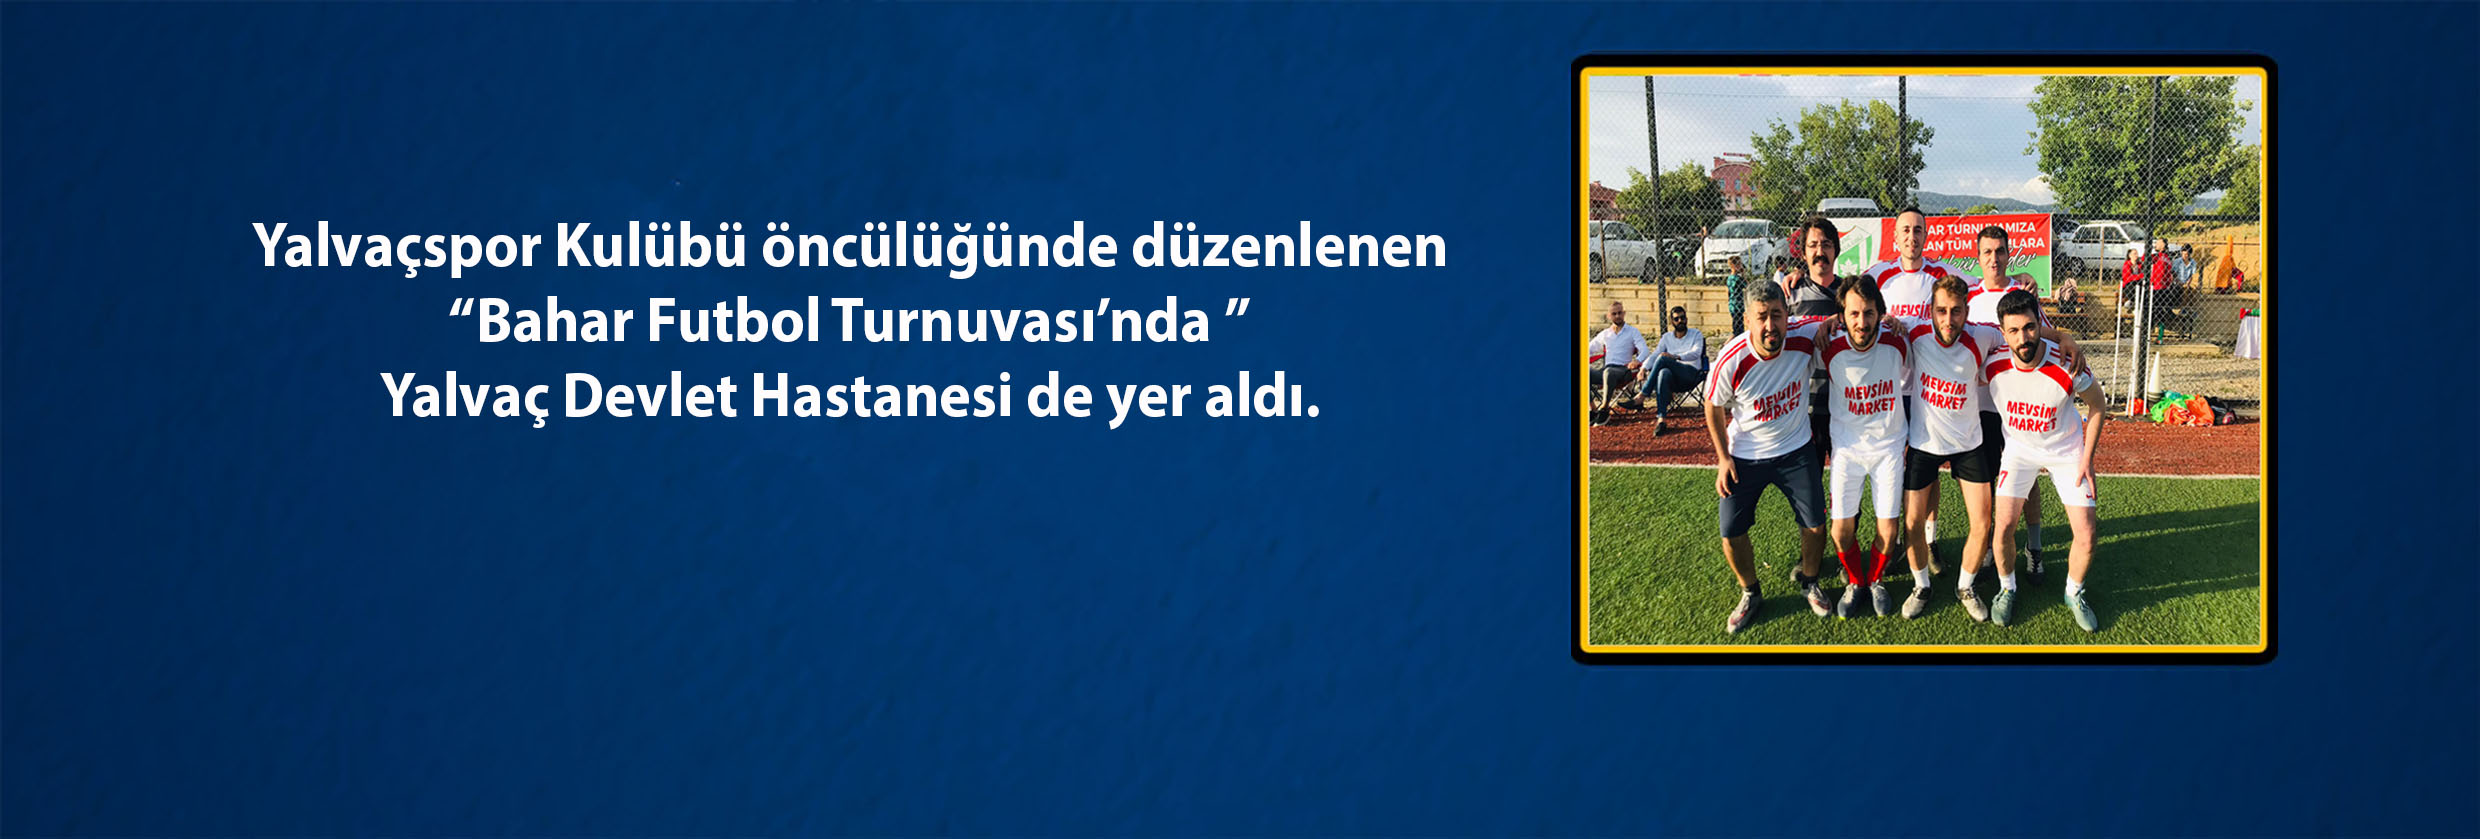 Yalvaçspor Kulübü öncülüğünde düzenlenen “Bahar Futbol Turnuvası’nda Yalvaç Devlet Hastanesi de yer aldı